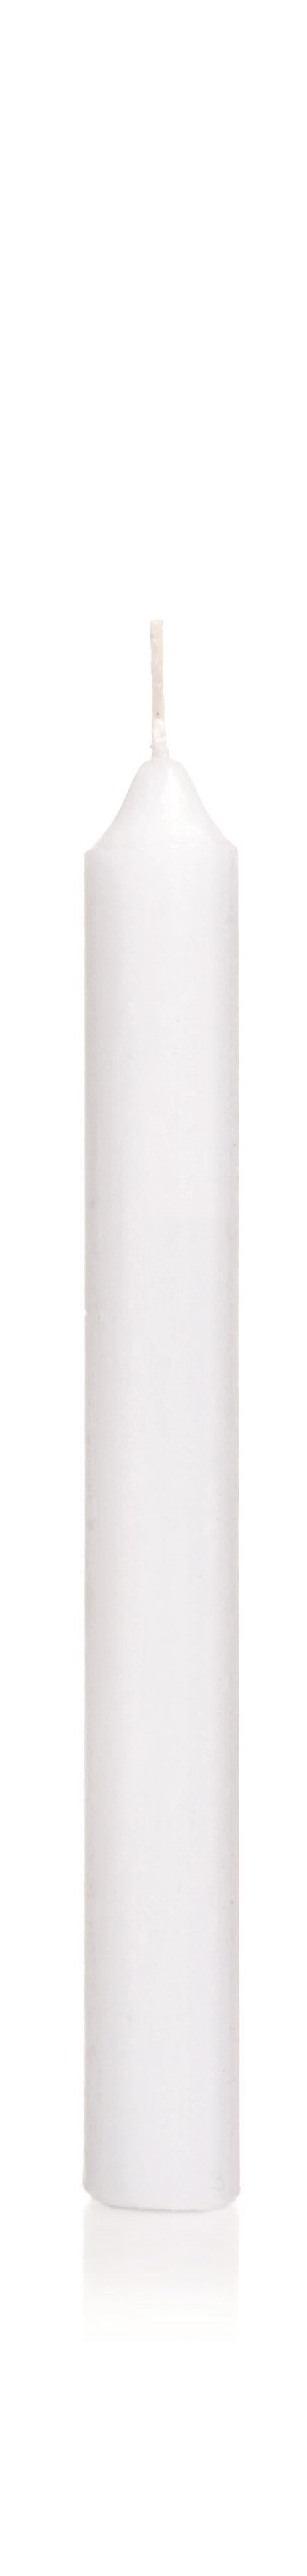 4x Kommunionkerze glatt 400/40mm (Weiß)